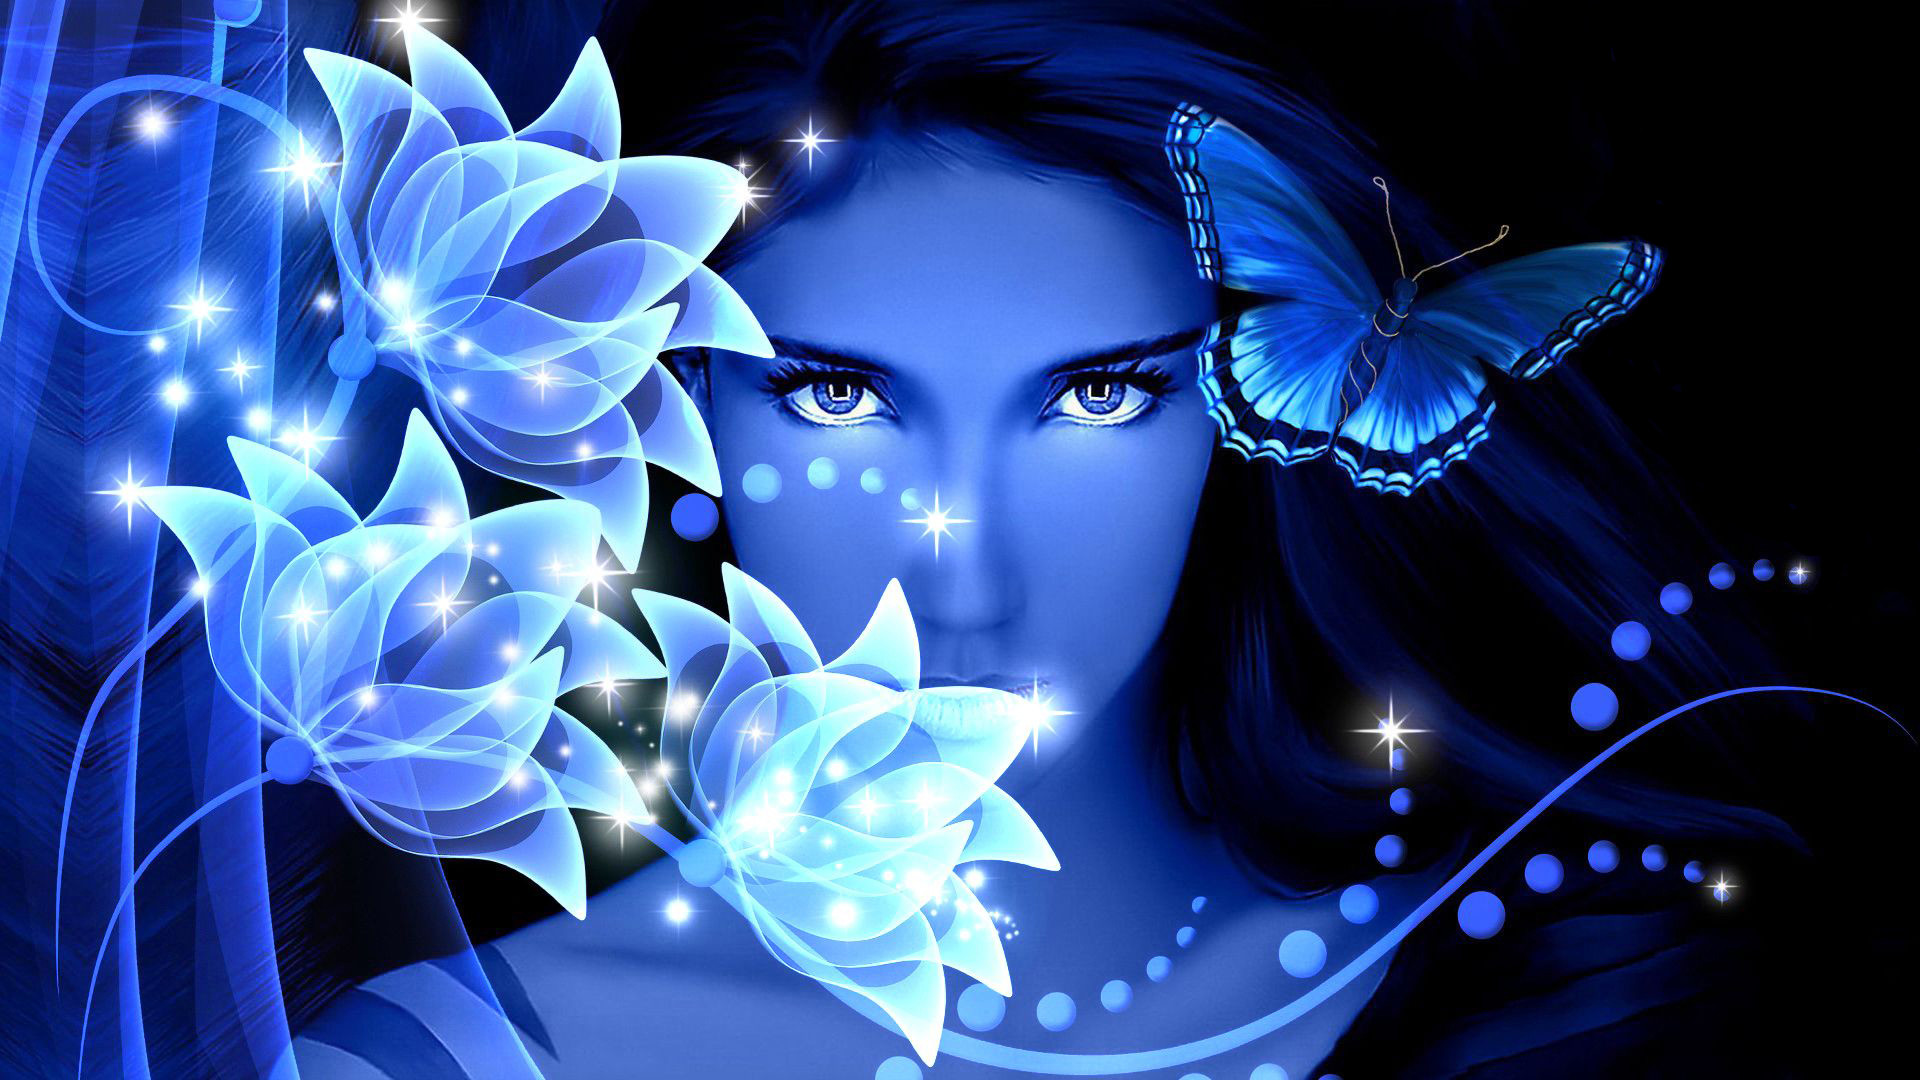 papier peint fille papillon,bleu,papillon,papillons et papillons,oeuvre de cg,insecte